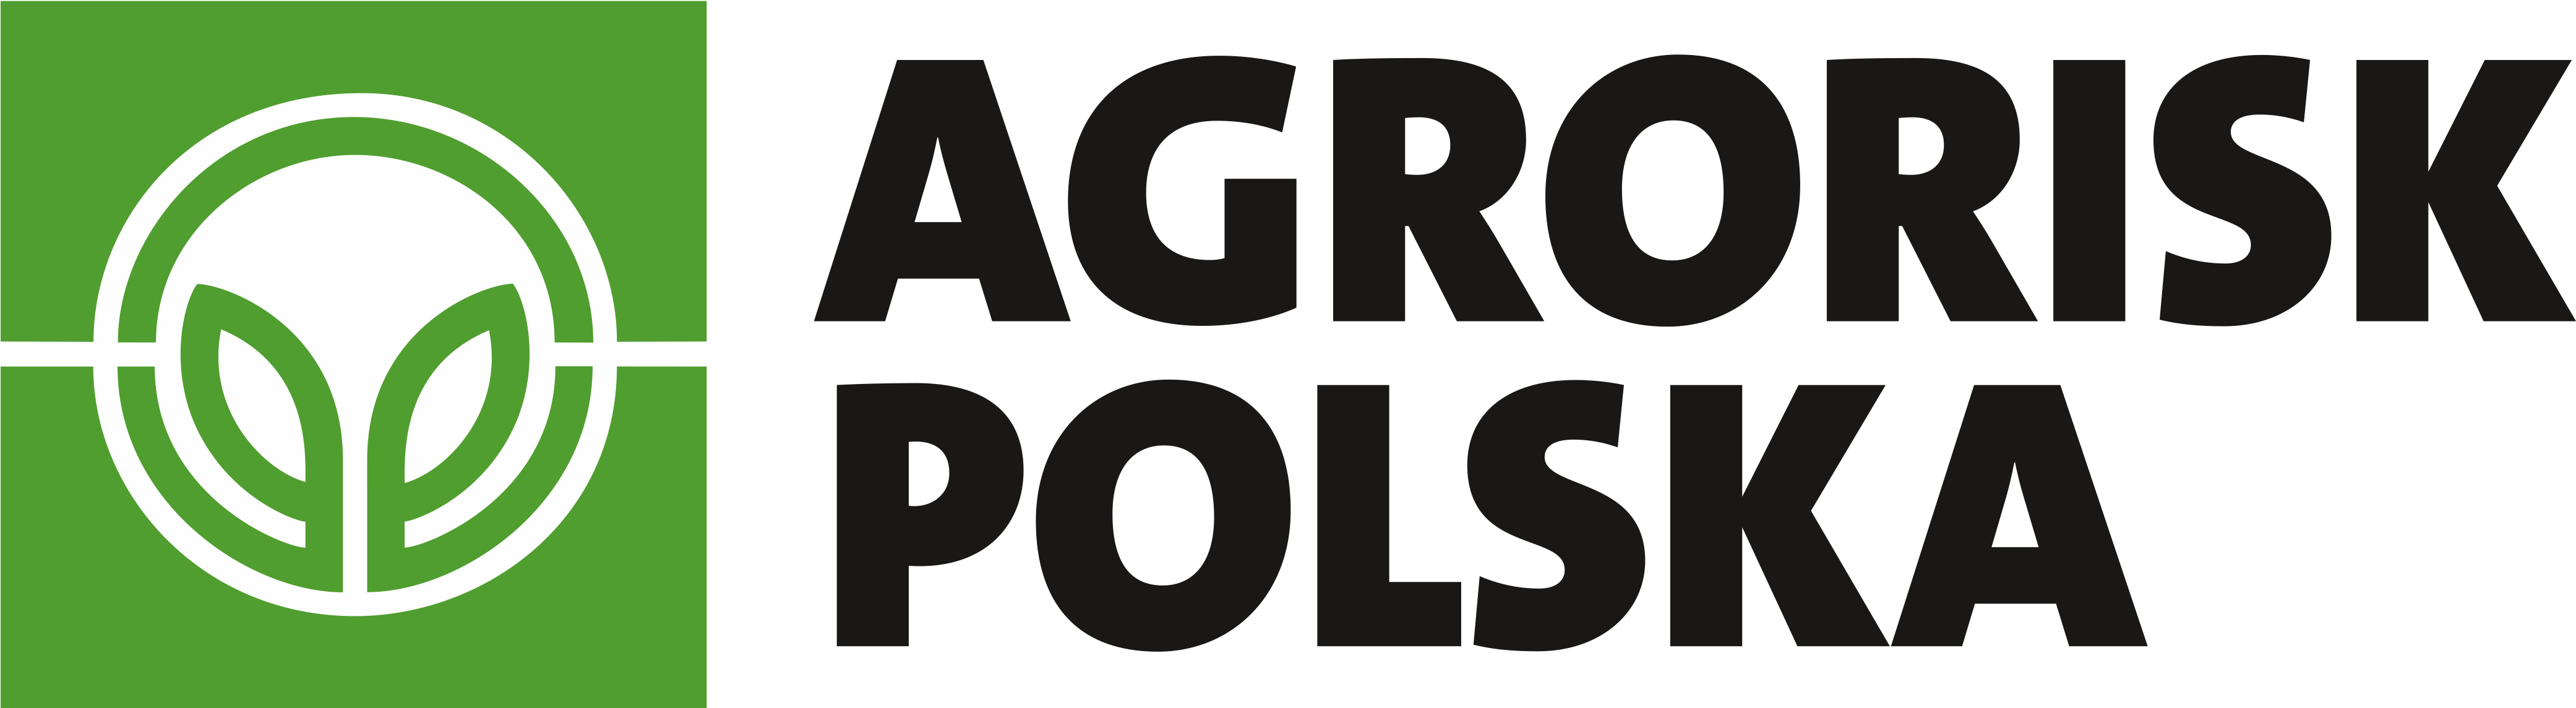 AgroRisk